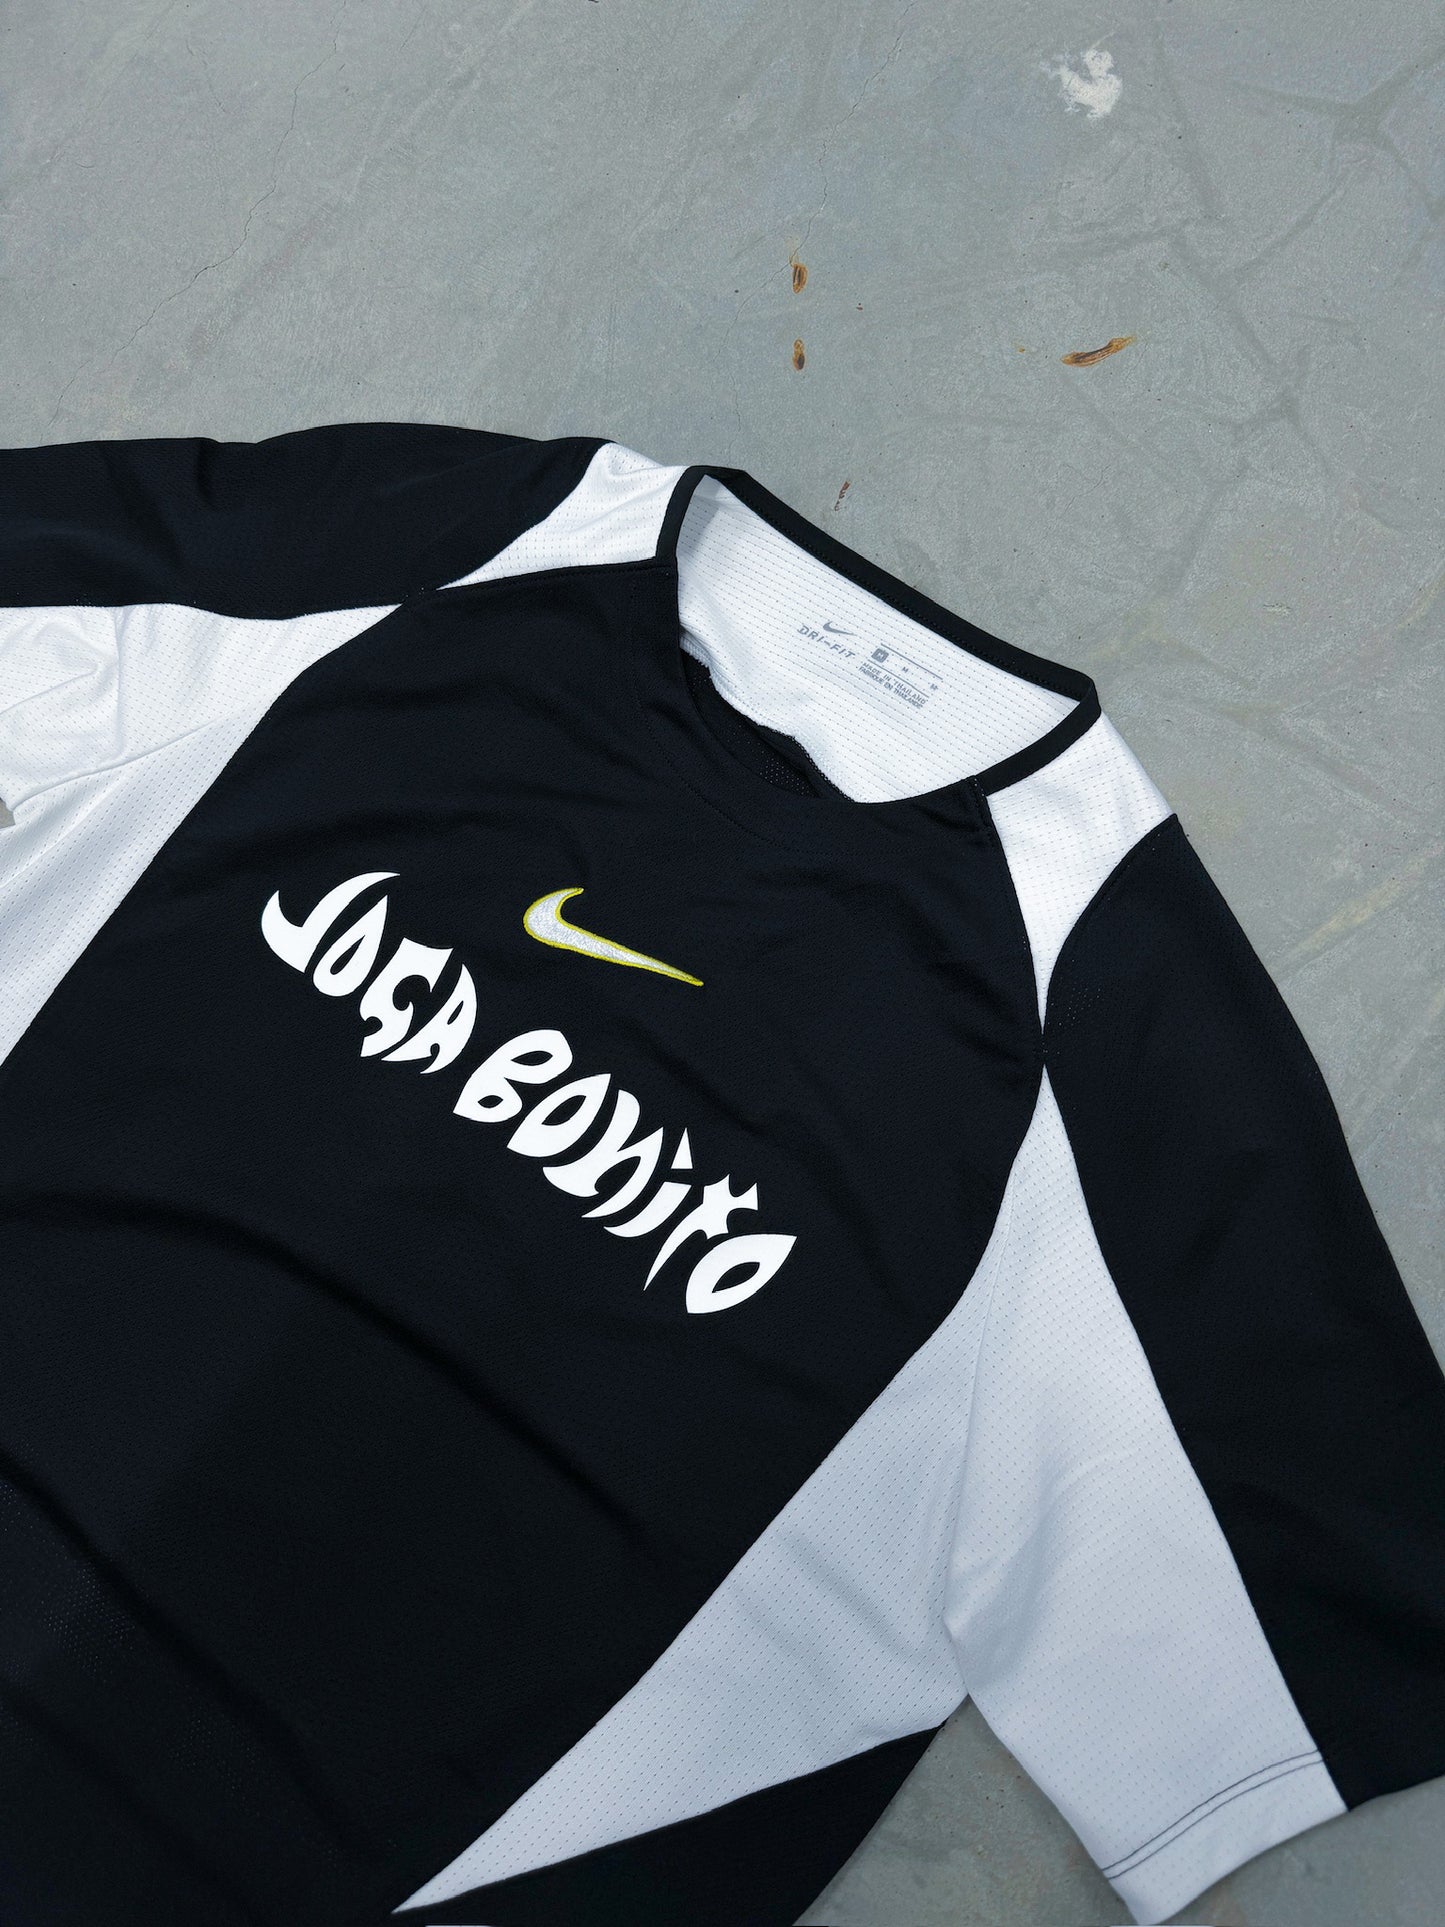 Nike "Joga Bonito" Vintage Trikot | M